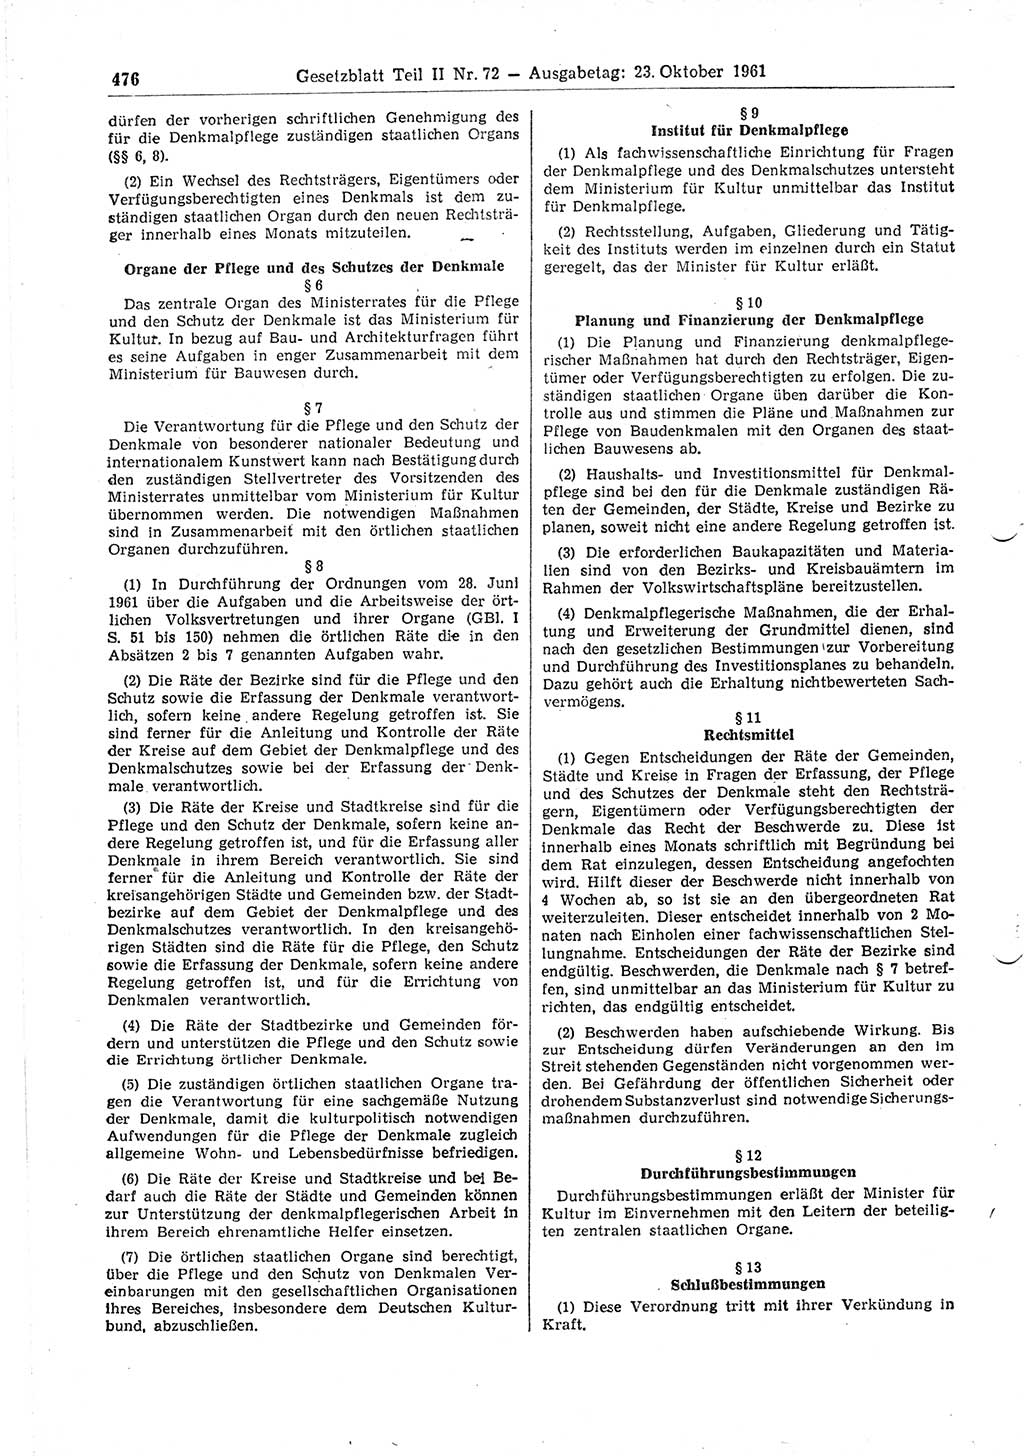 Gesetzblatt (GBl.) der Deutschen Demokratischen Republik (DDR) Teil ⅠⅠ 1961, Seite 476 (GBl. DDR ⅠⅠ 1961, S. 476)